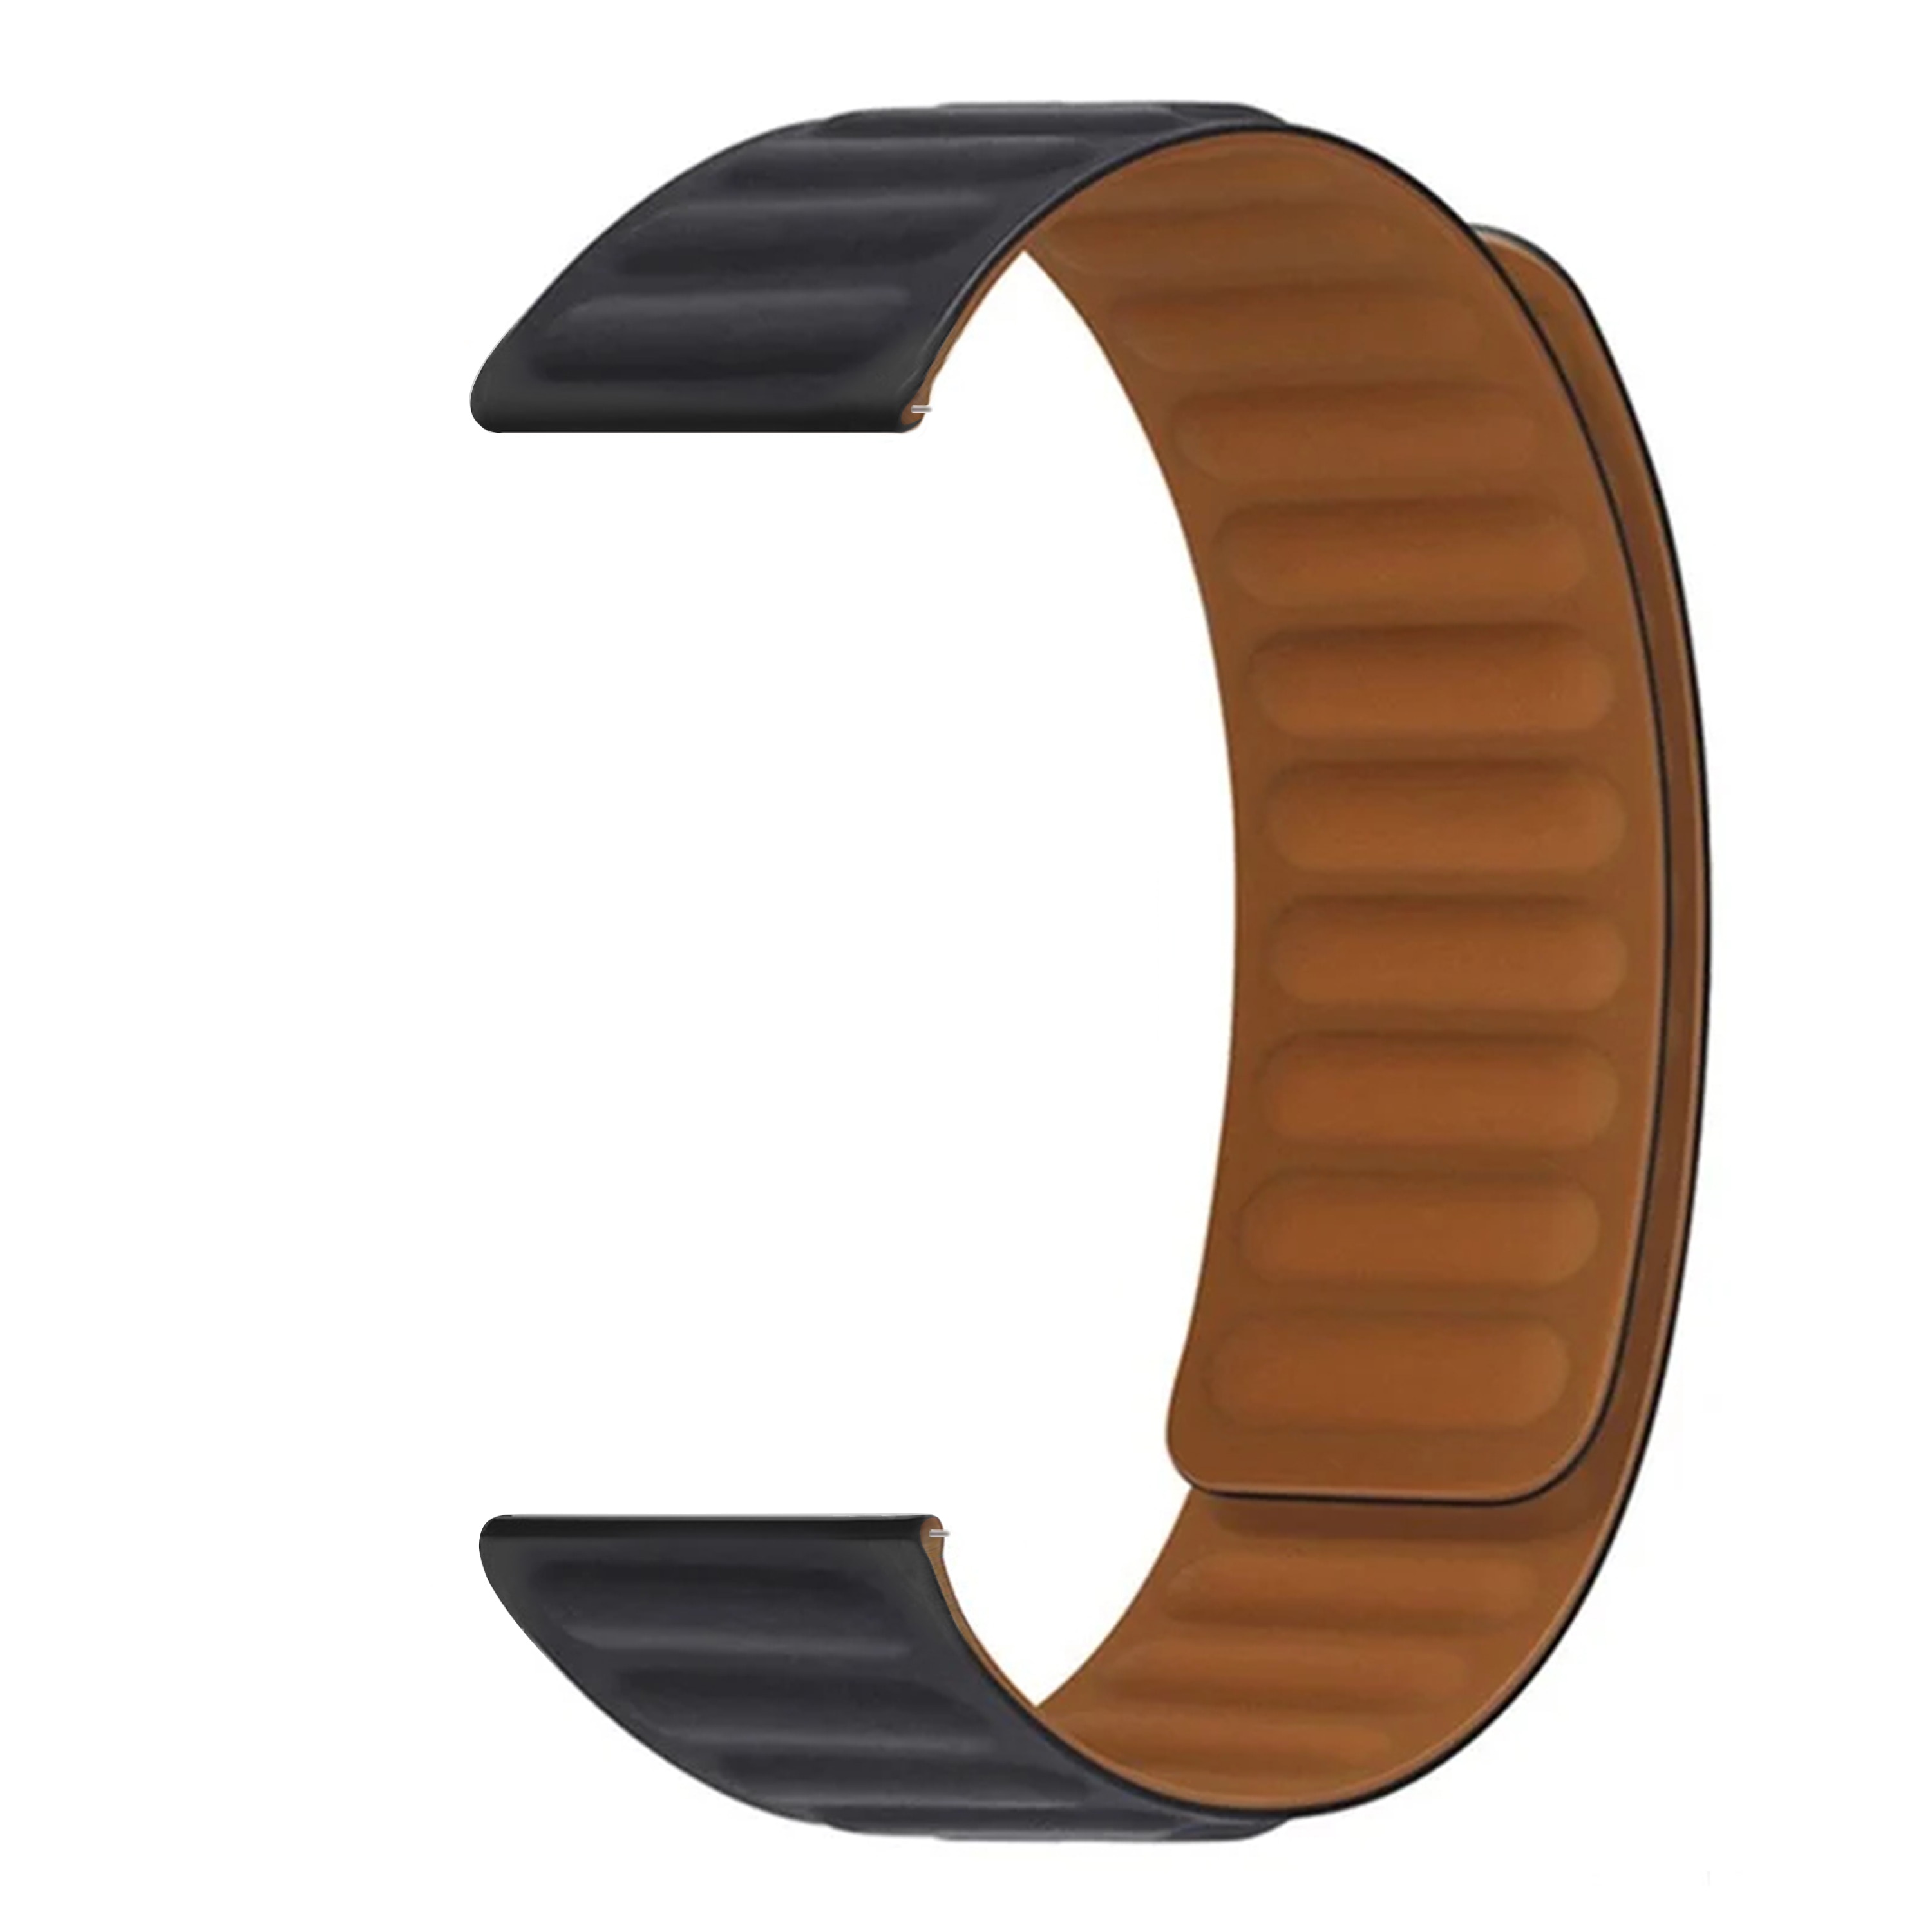 Hama Fit Watch 6910 Magnetische Armband aus Silikon schwarz